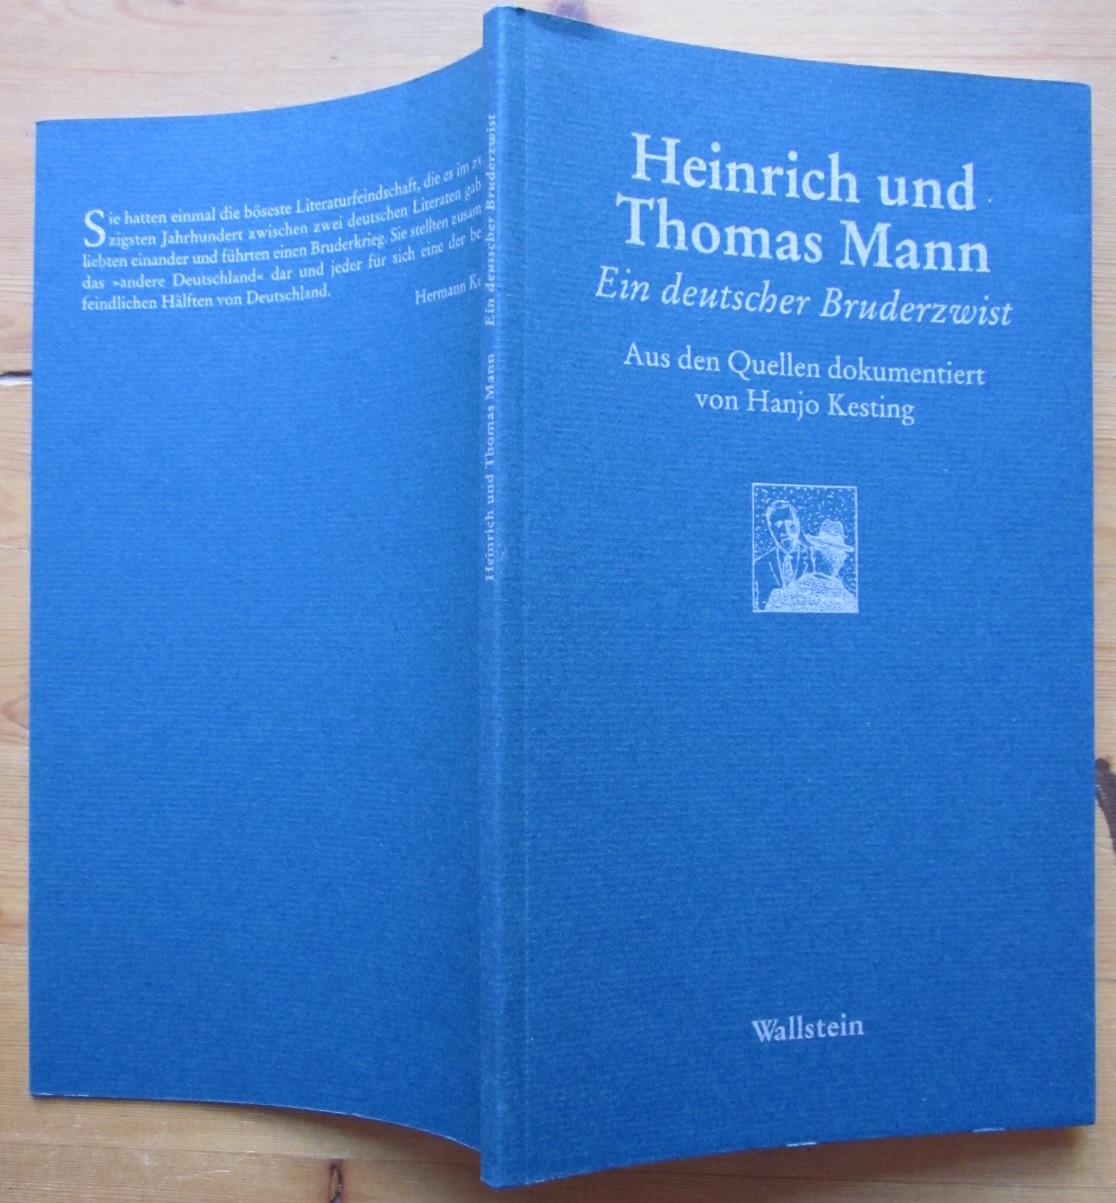 Ein deutscher Bruderzwist. Aus den Quellen dokumentiert von Hanjo Kesting. - Mann, Thomas und Heinrich Mann